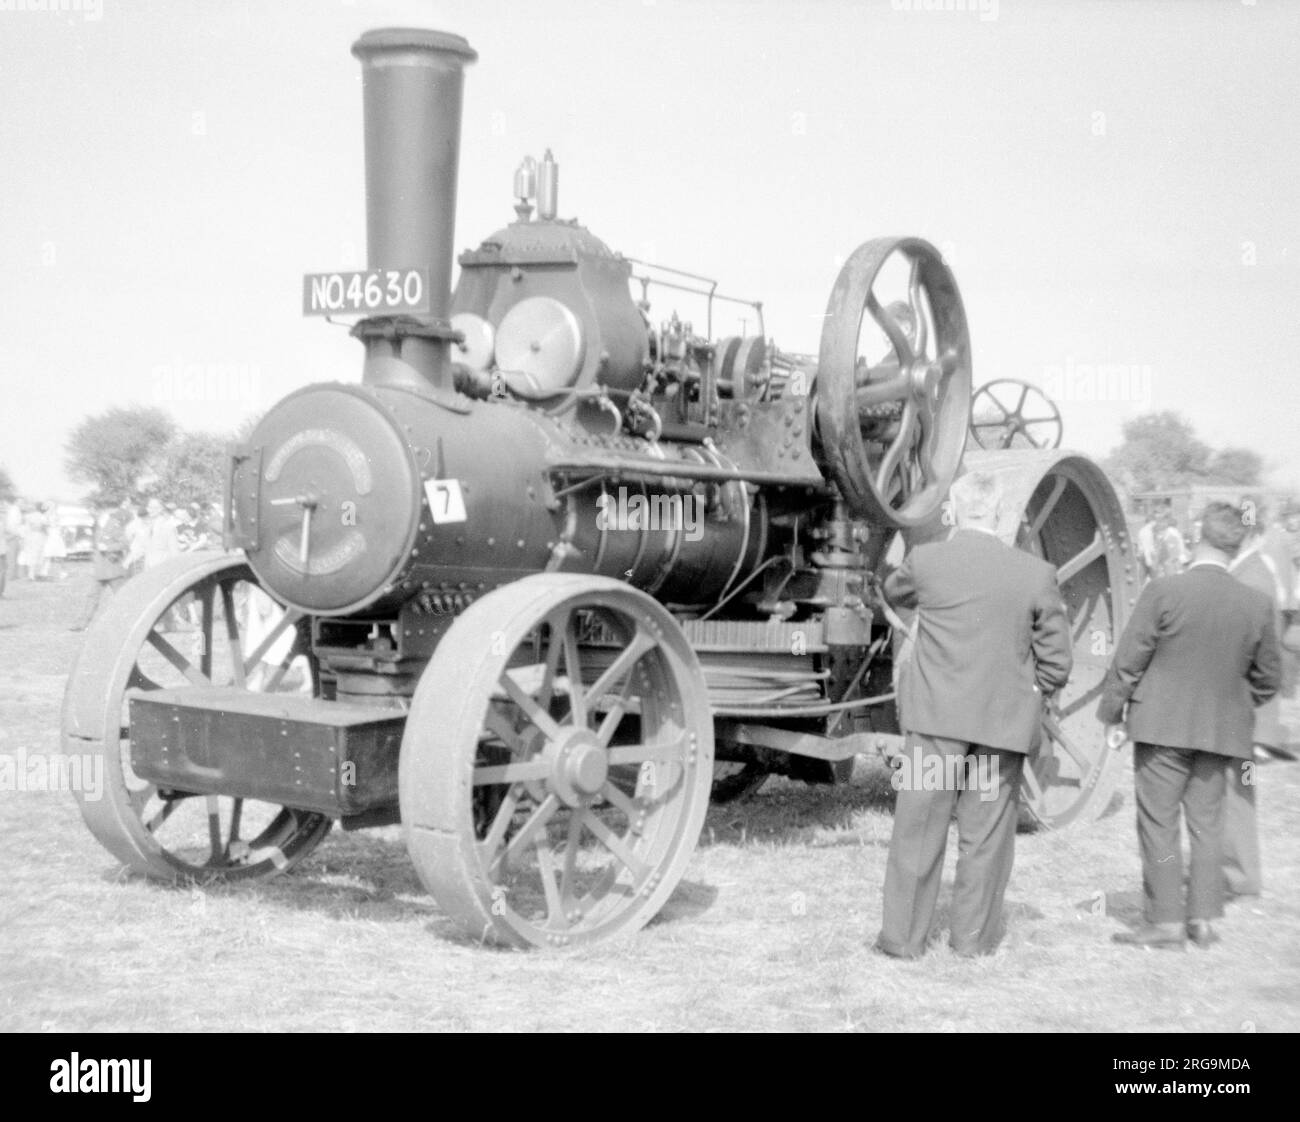 Fowler labour Engine NO4630 Wilbur (msn 14712), construit en 1917, lors du rallye à vapeur Andover 1959. (John Fowler & Co Engineers de Leathley Road, Hunslet, Leeds, West Yorkshire, Angleterre ont produit des moteurs de traction et des outils et équipements de labour, ainsi que des équipements ferroviaires). Banque D'Images